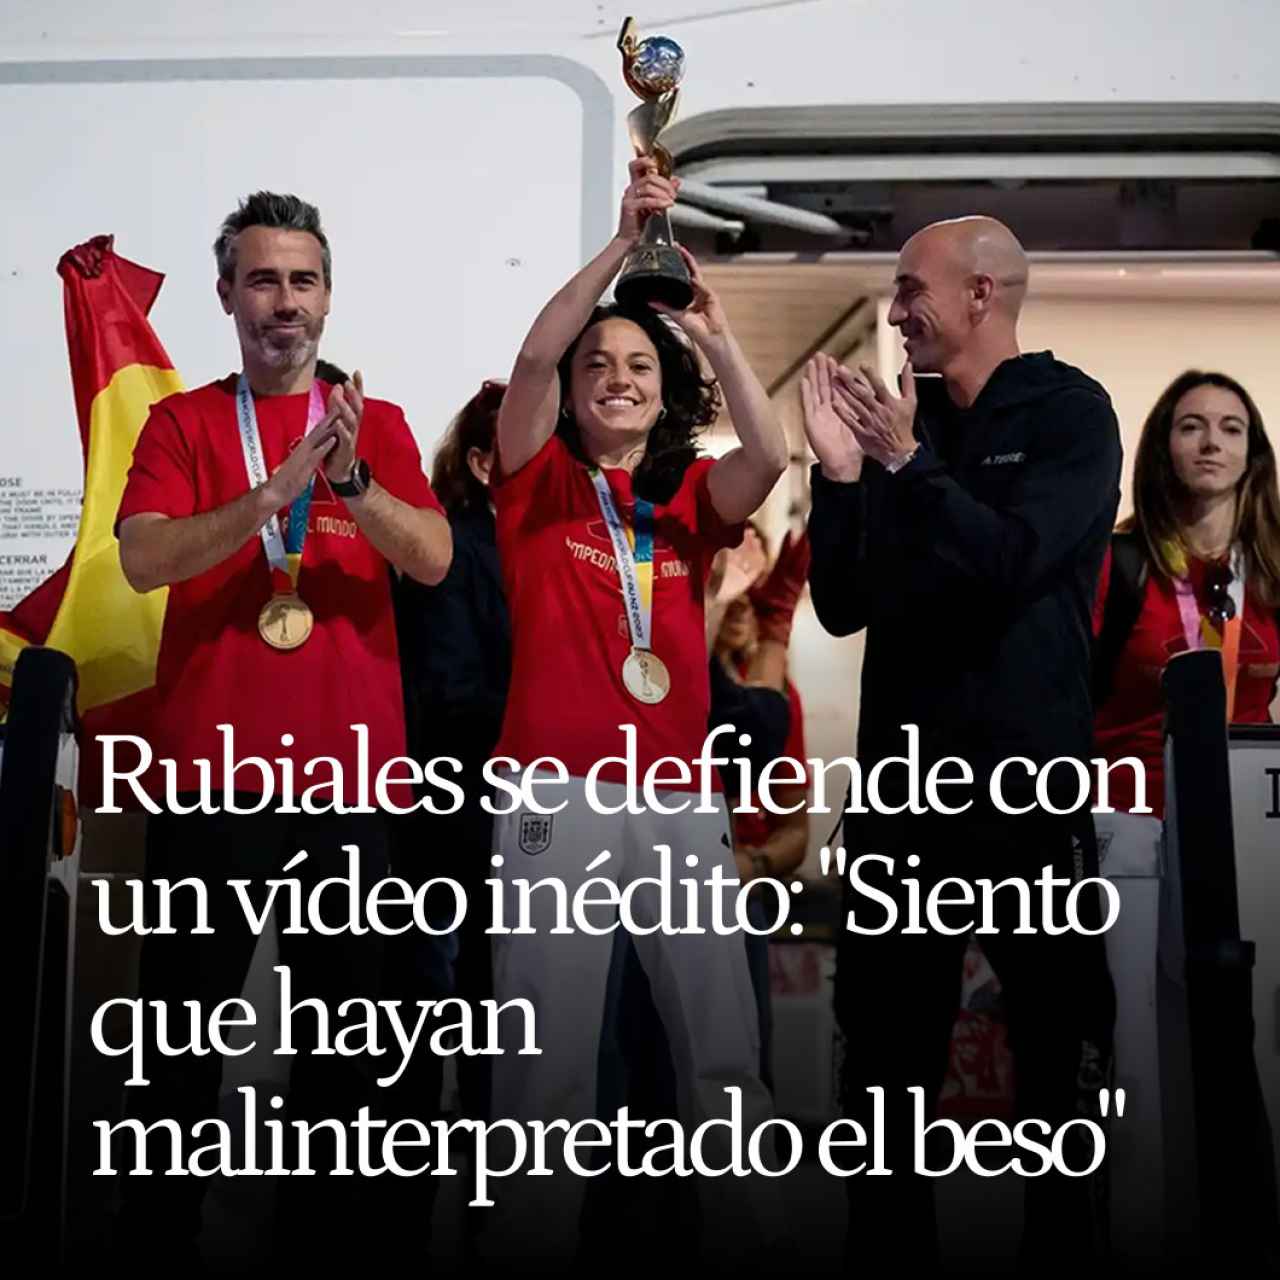 Luis Rubiales se defiende con un vídeo inédito en Barajas: "Siento que hayan malinterpretado el beso"